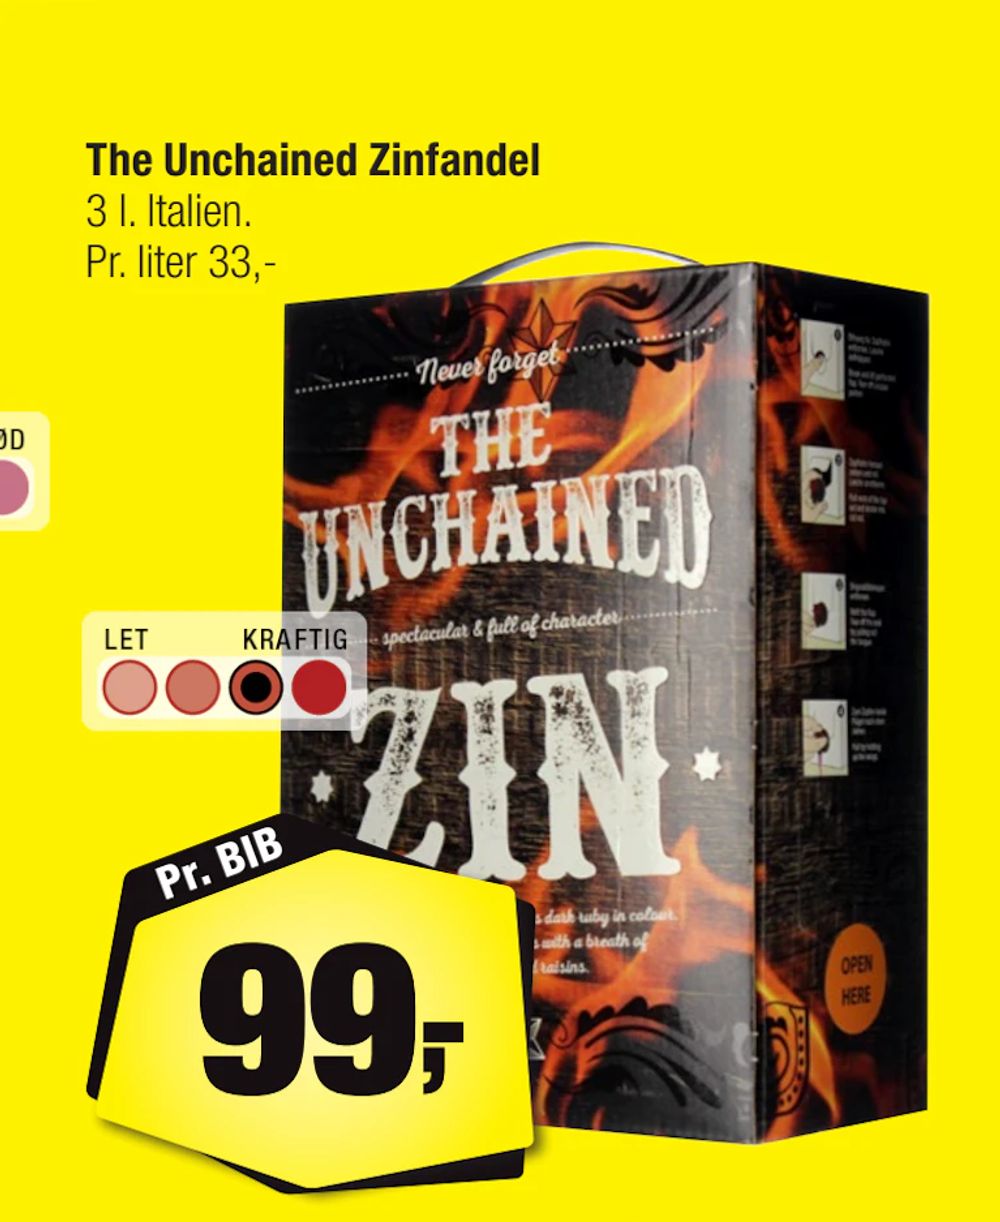 Tilbud på The Unchained Zinfandel fra Calle til 99 kr.